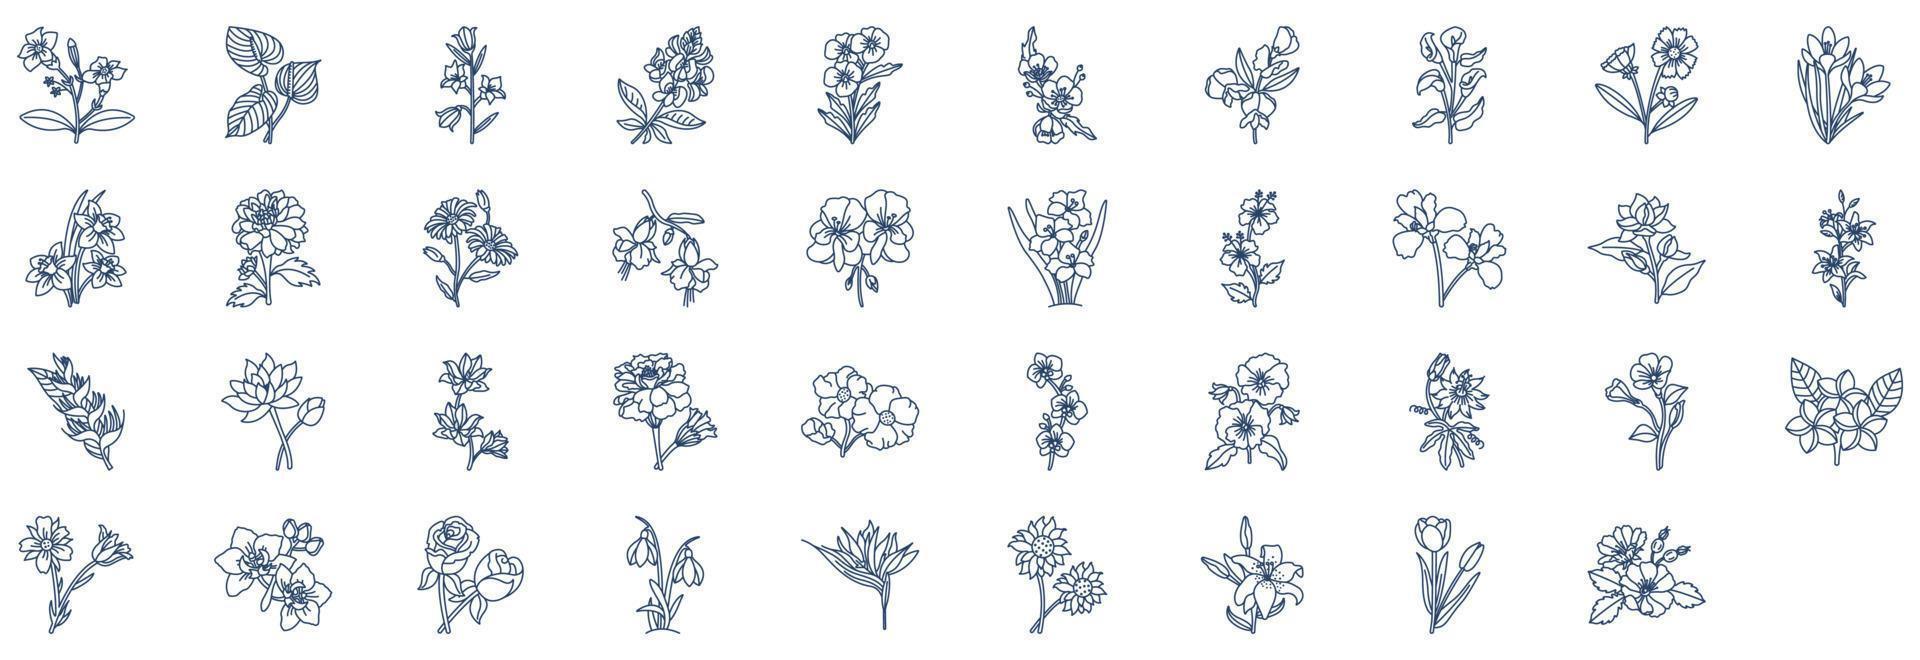 coleção de ícones relacionados a flores, incluindo ícones como fúcsia, margarida, girassol e muito mais. ilustrações vetoriais, conjunto perfeito de pixels vetor